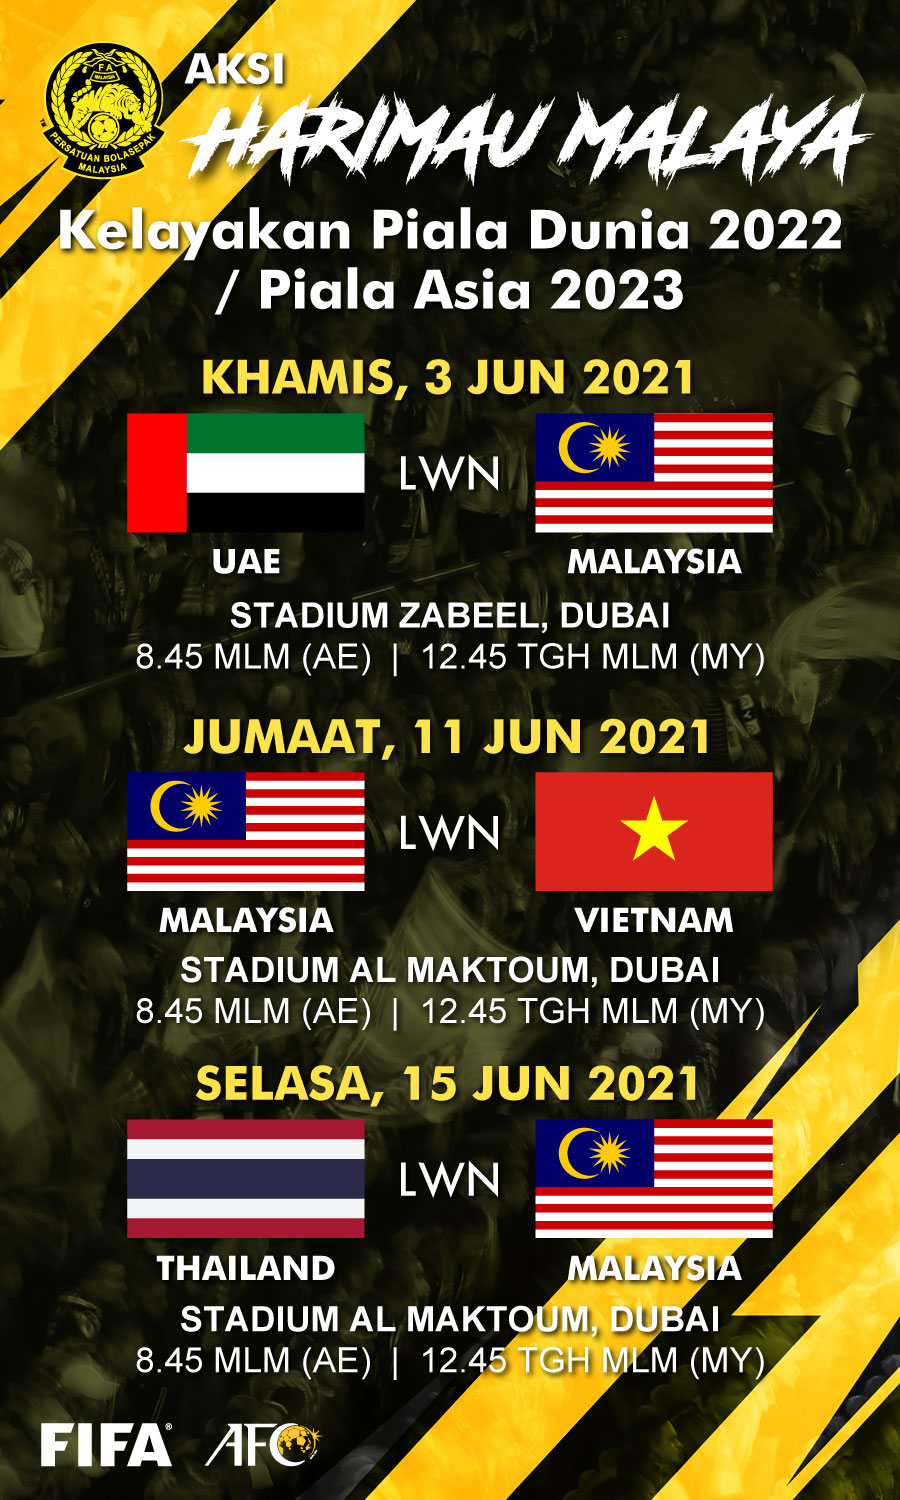 Kelayakan Piala Dunia 2022 Kelayakan Piala Dunia 2022 Dan Piala Asia 2023 Malaysia 21 Thailand Astro Arena